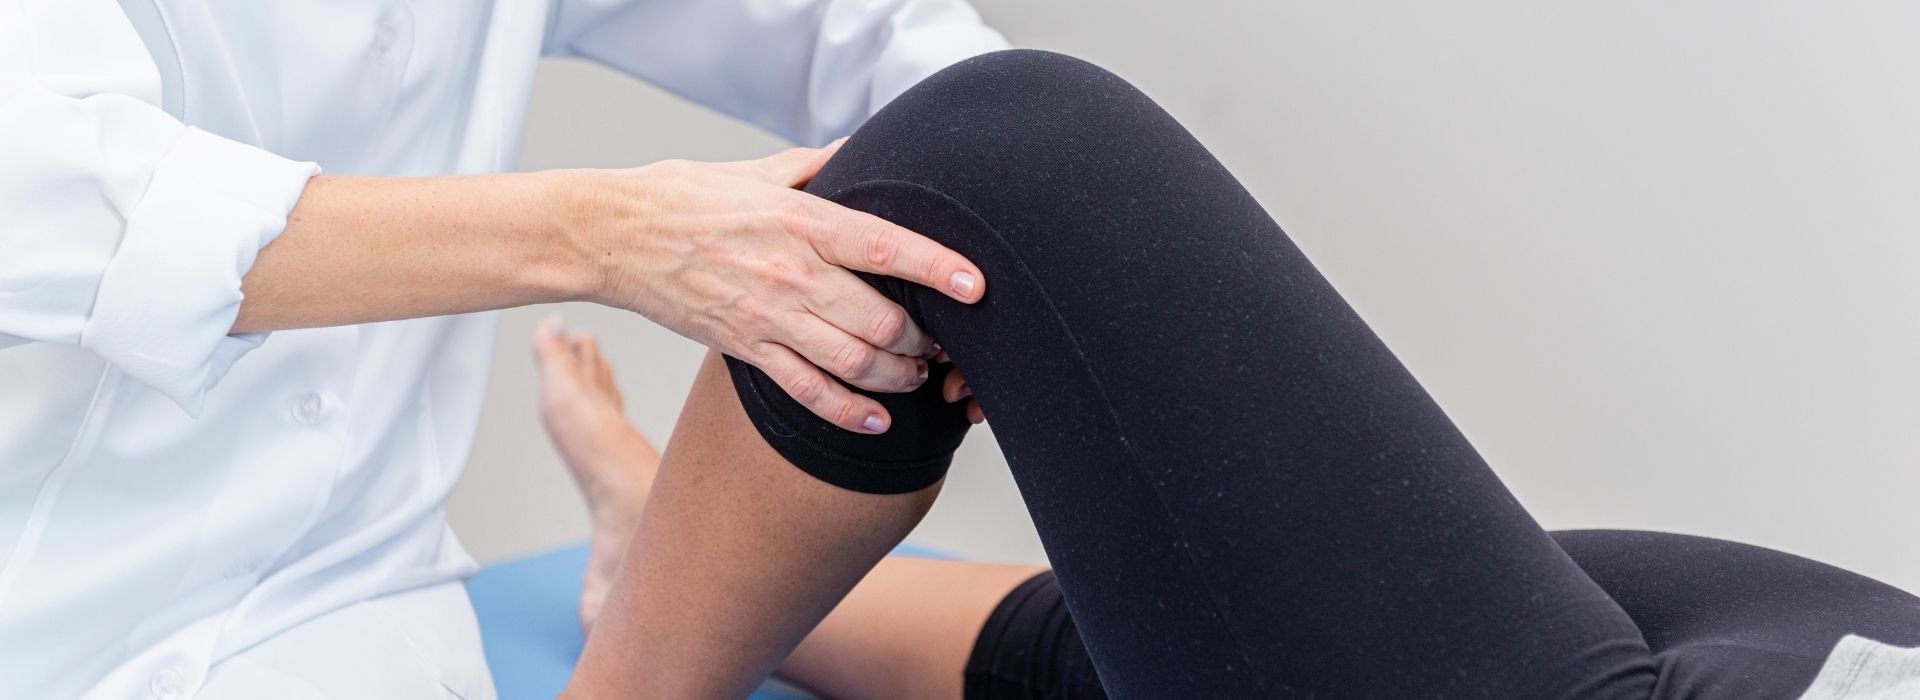 fisioterapia-dolor-rodillas